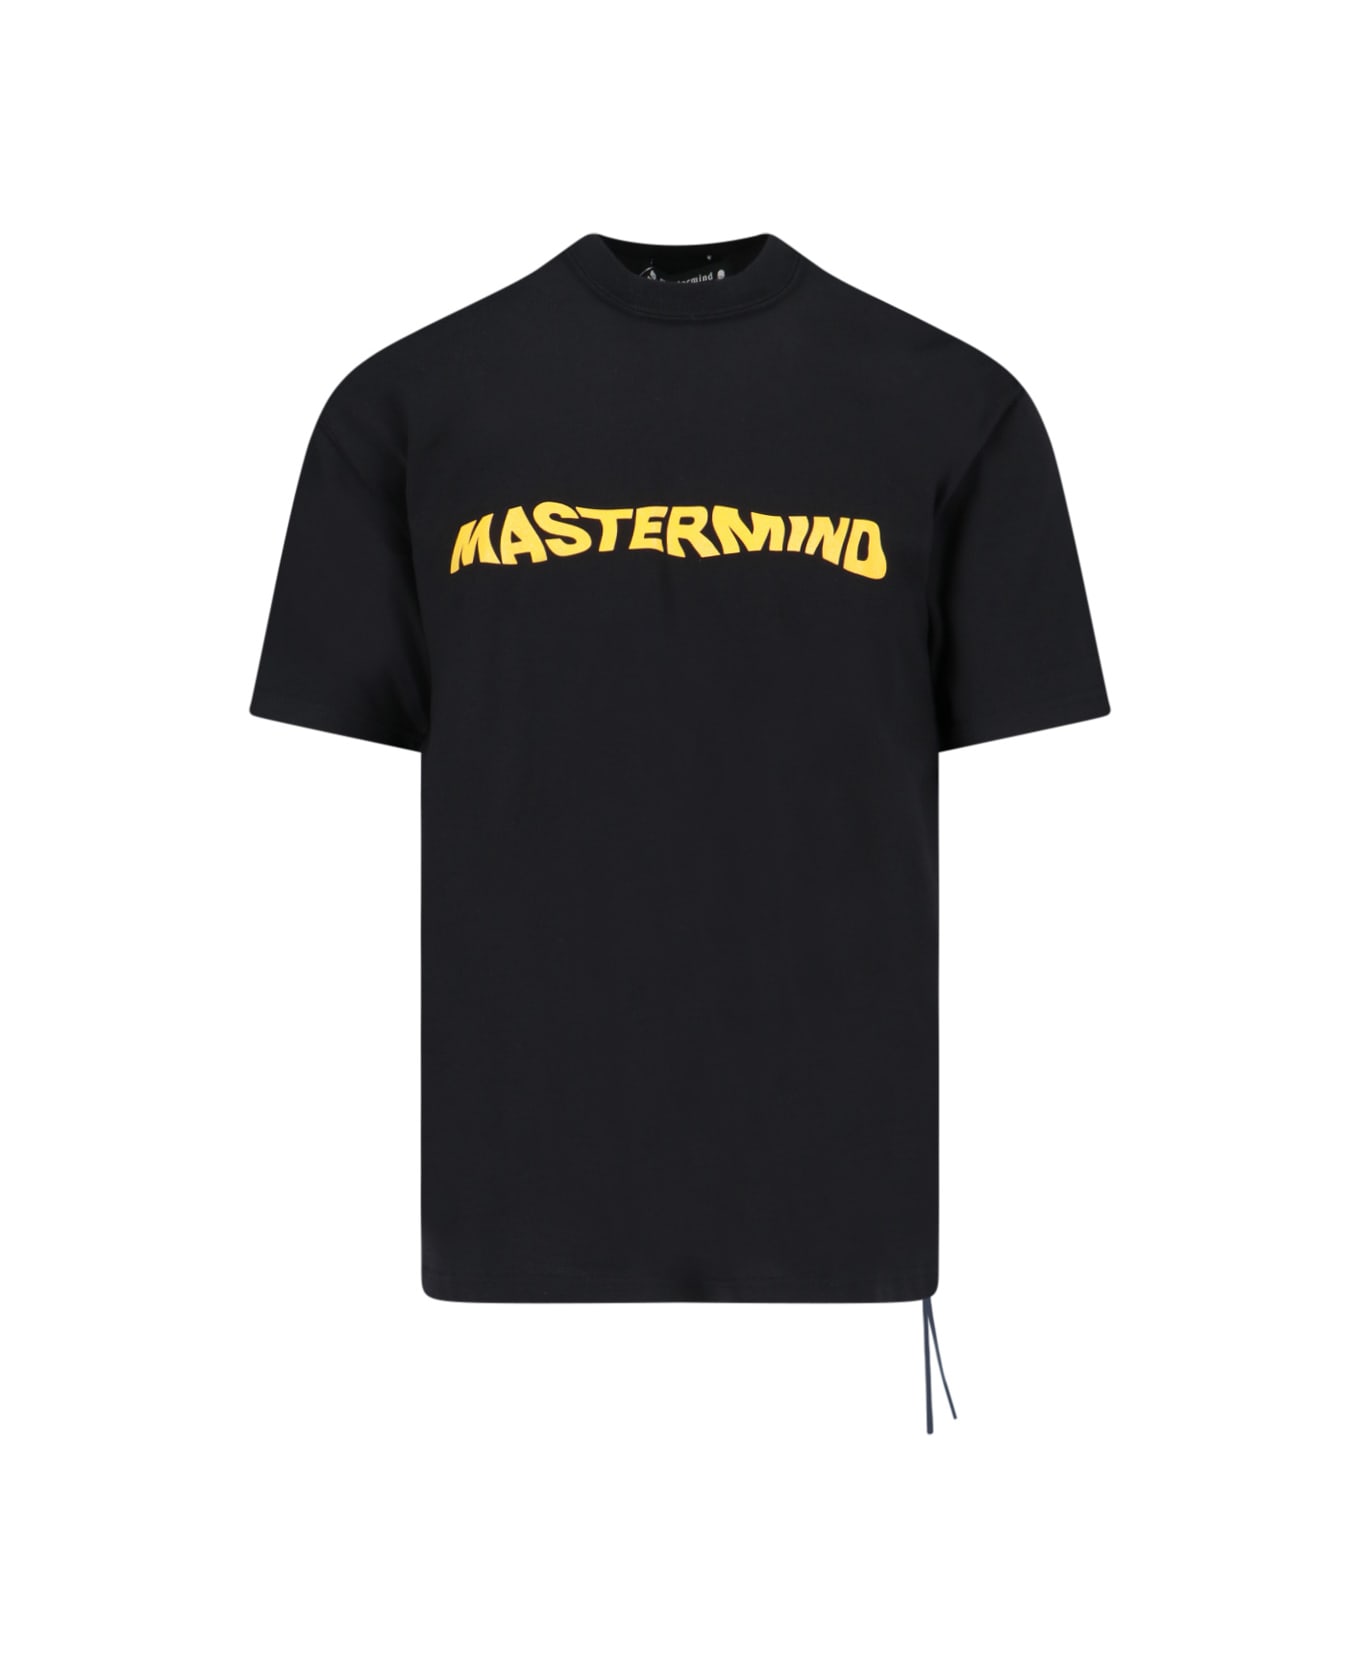 Mastermind Japan Logo T-shirt - Black  